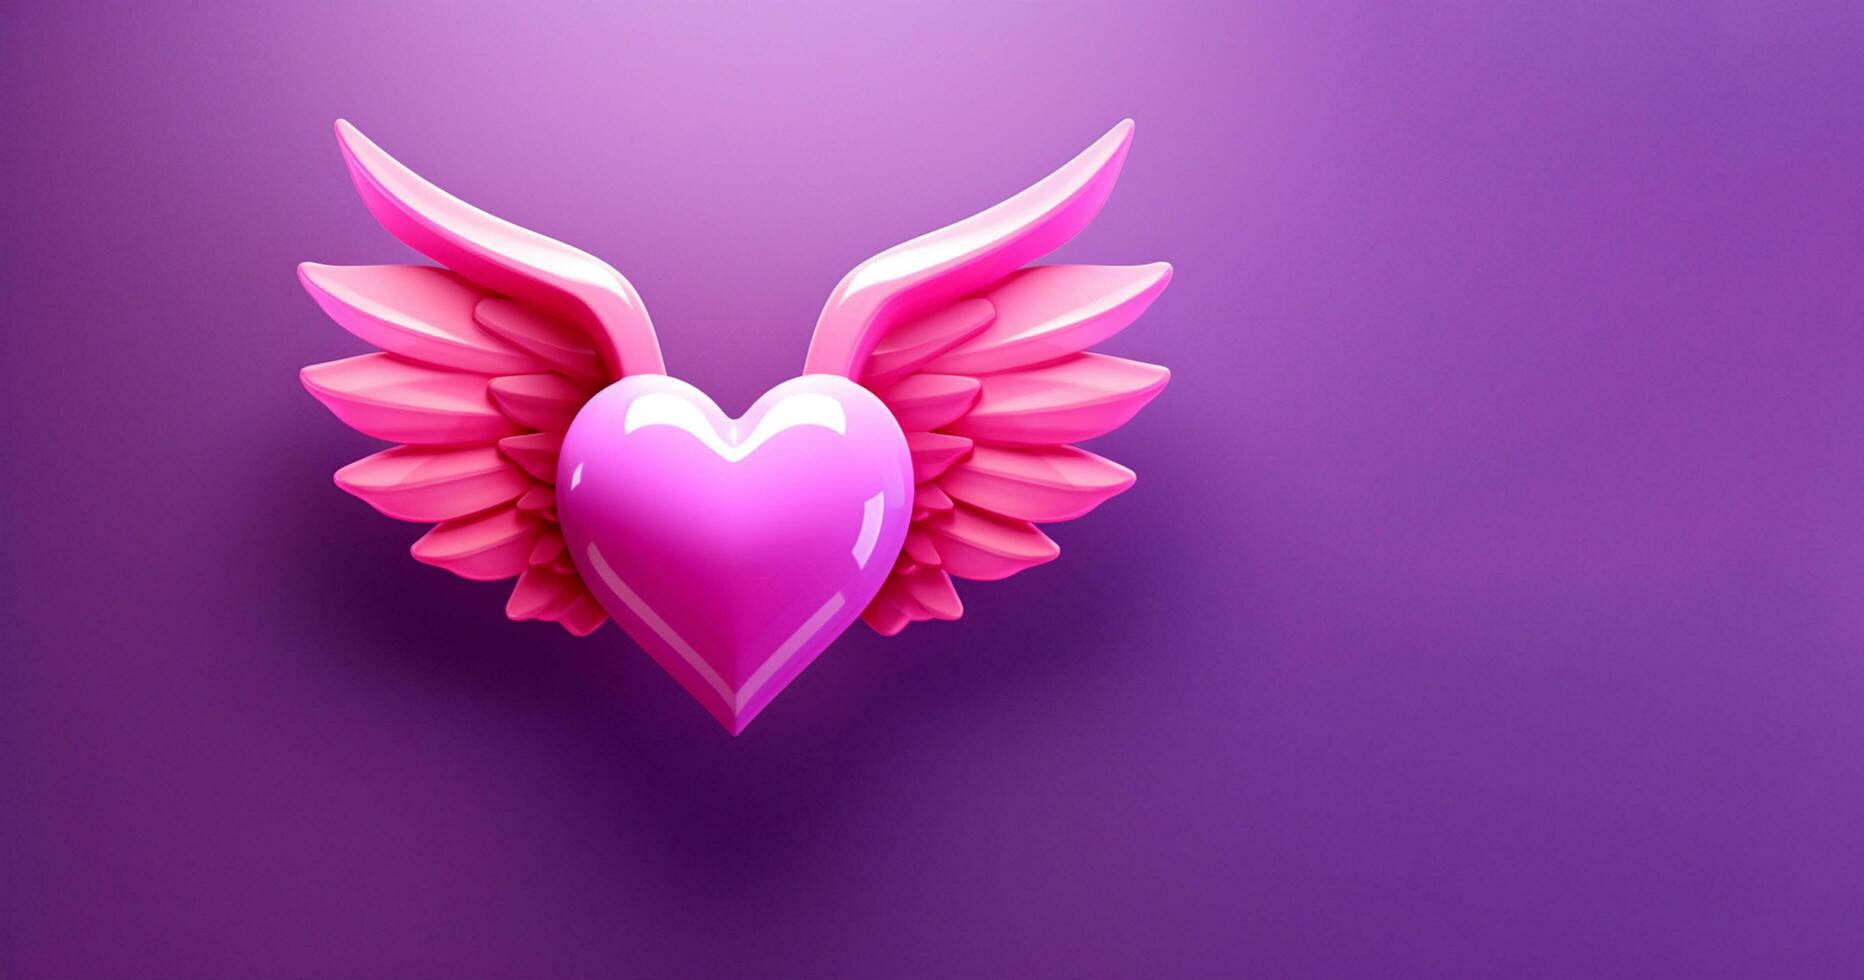 3d Rosa coração com asas em uma roxa fundo foto